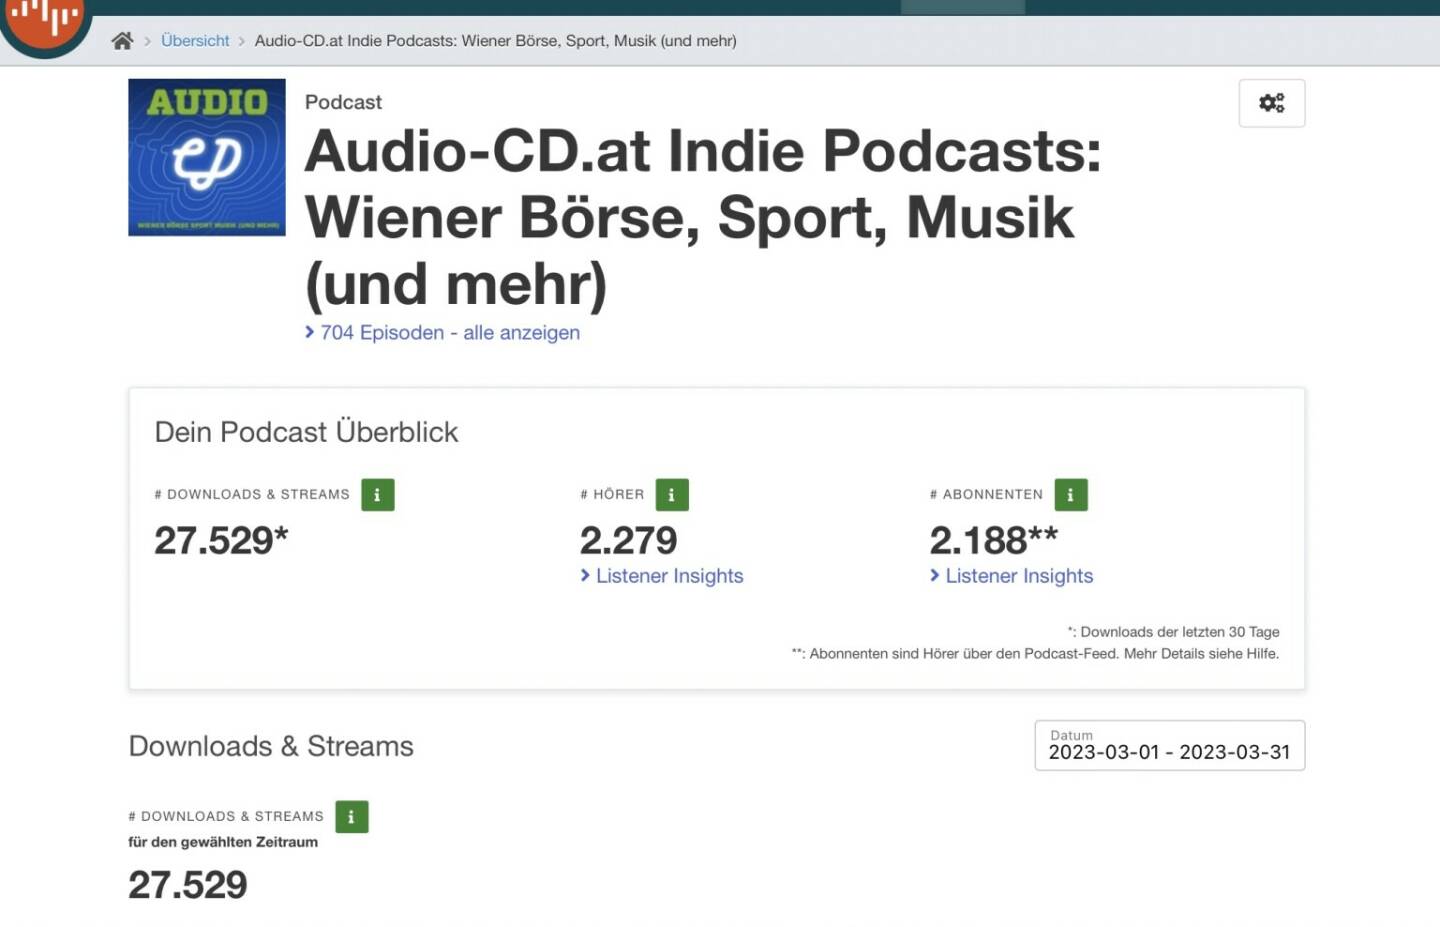 27.500 Downloads für Audio-CD.at Indie Podcasts im März 